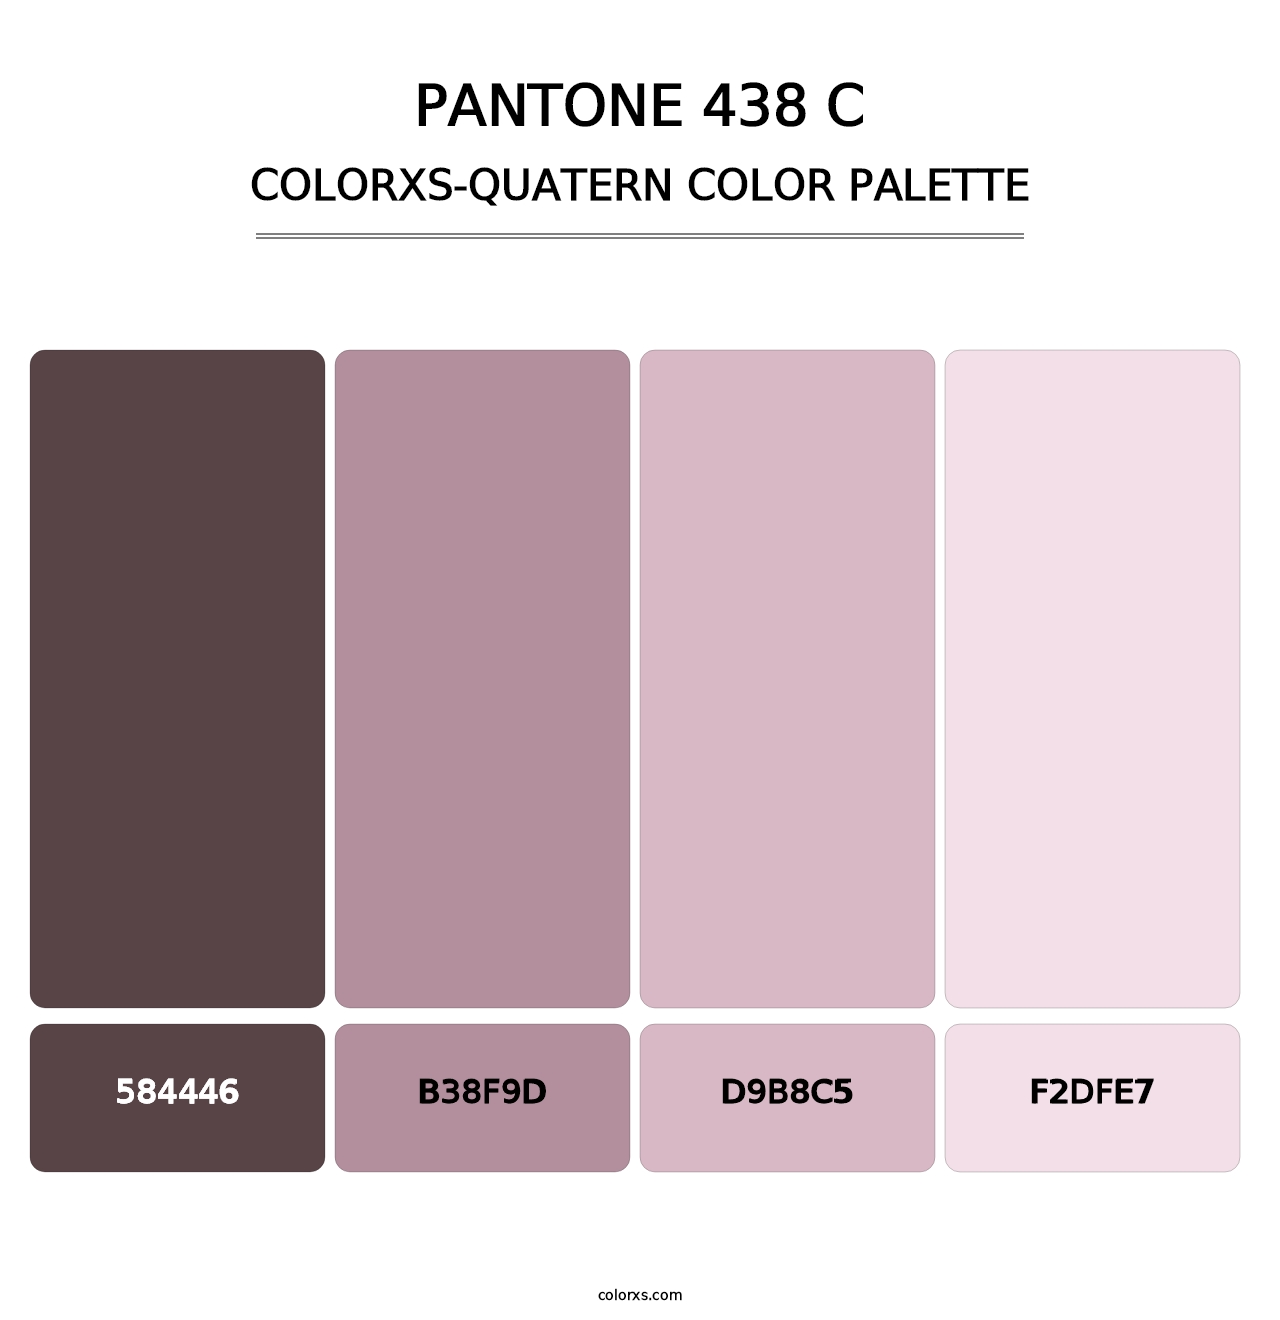 PANTONE 438 C - Colorxs Quatern Palette